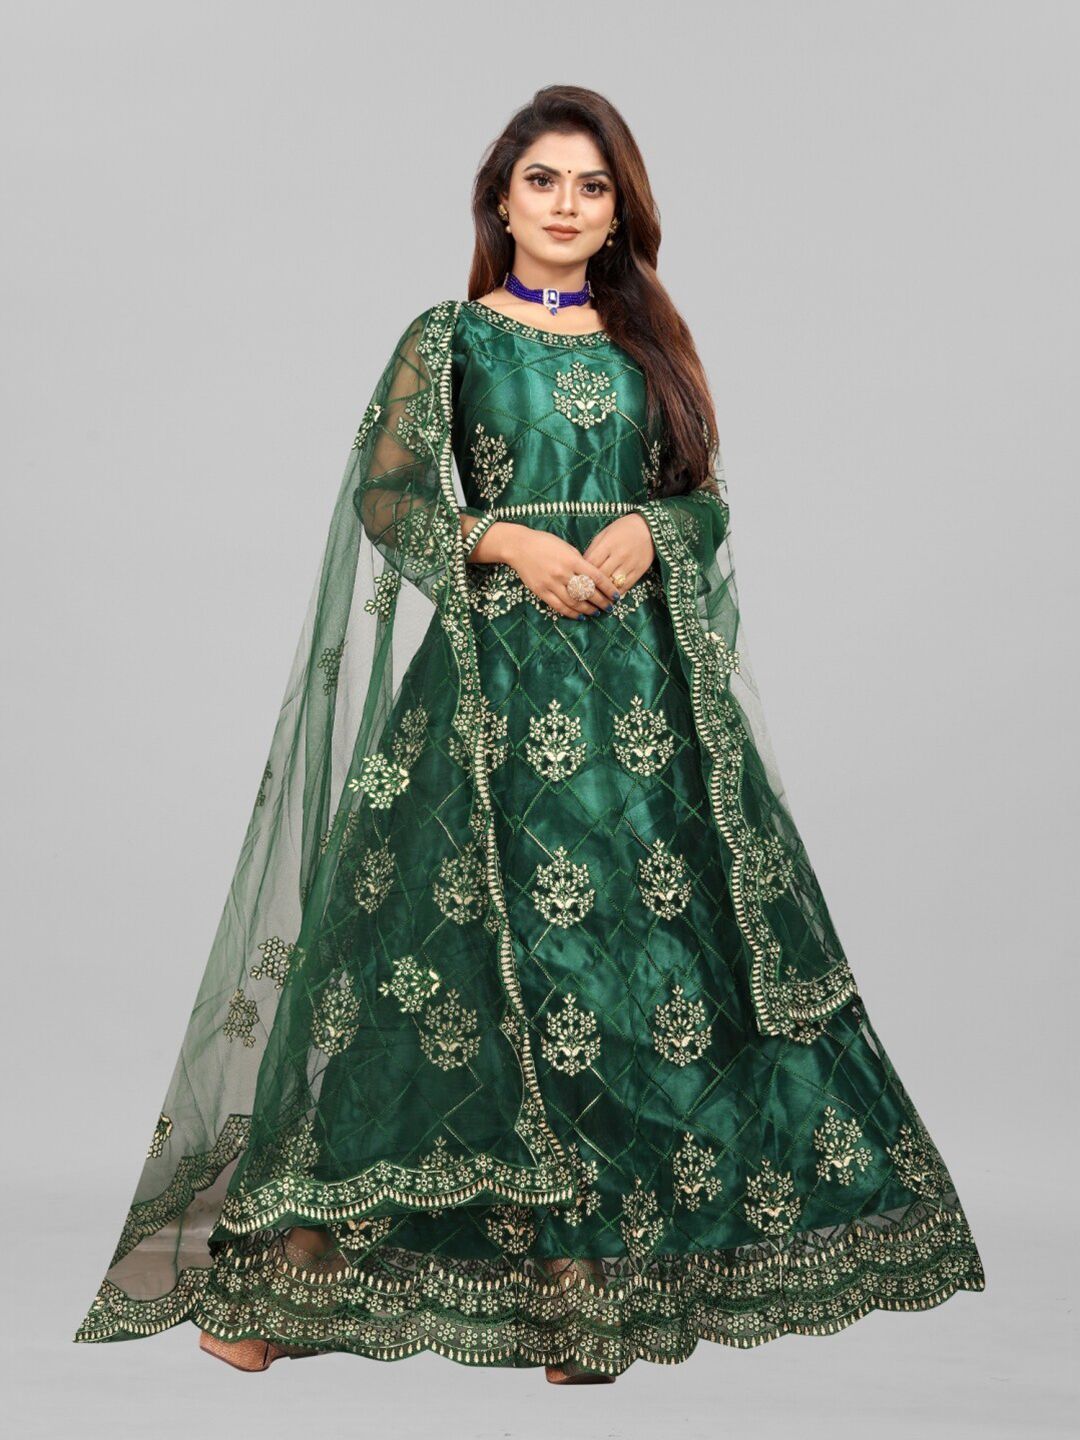 APNISHA Women Green Ethnic Motifs Net Ethnic Maxi Maxi Dress Price in India